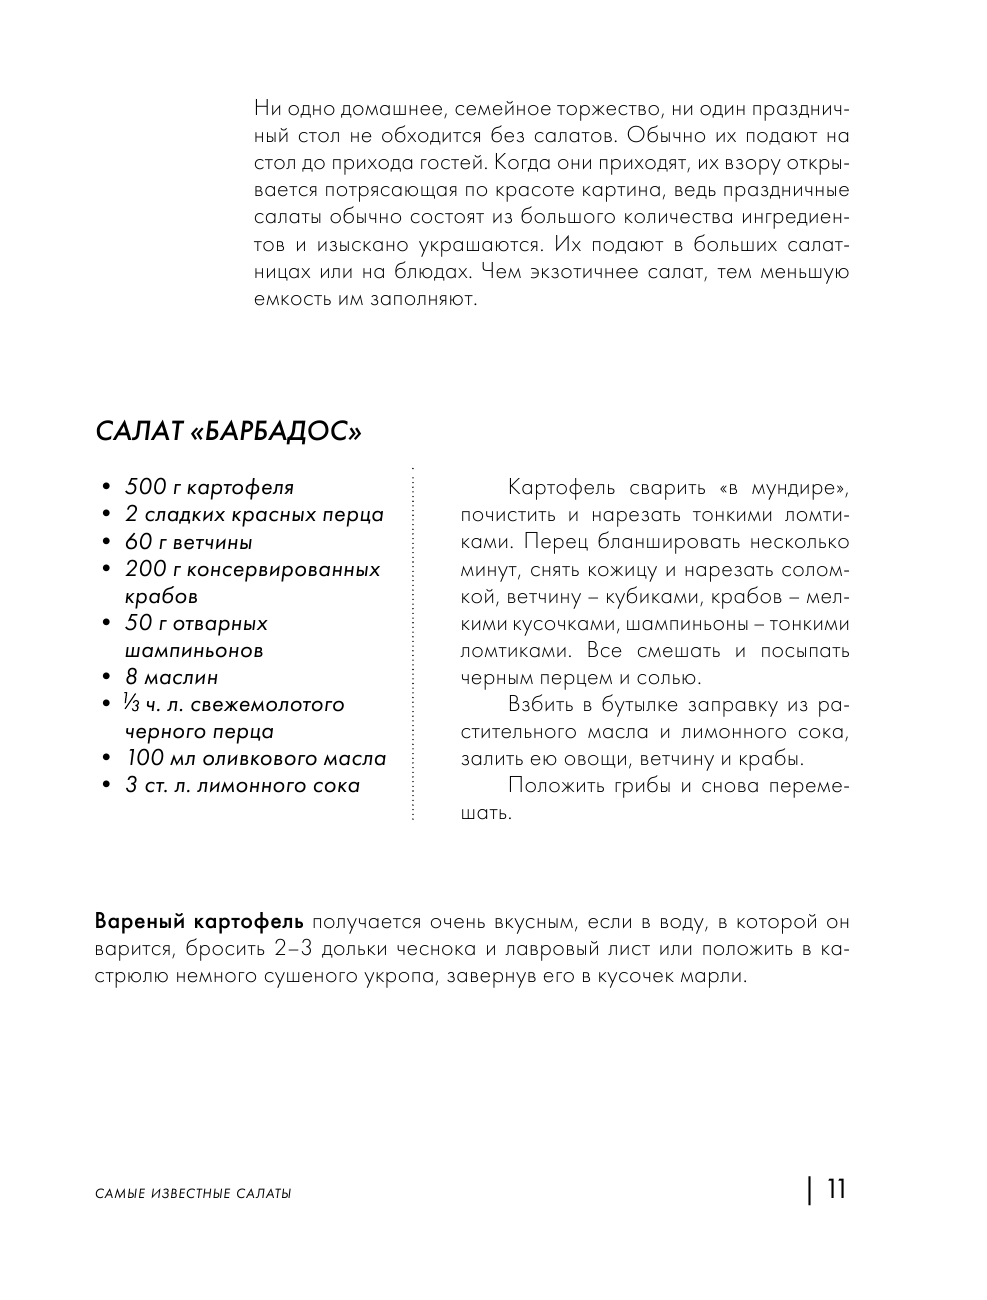 Энциклопедия салатов. Рецепты и рекомендации - фото №13